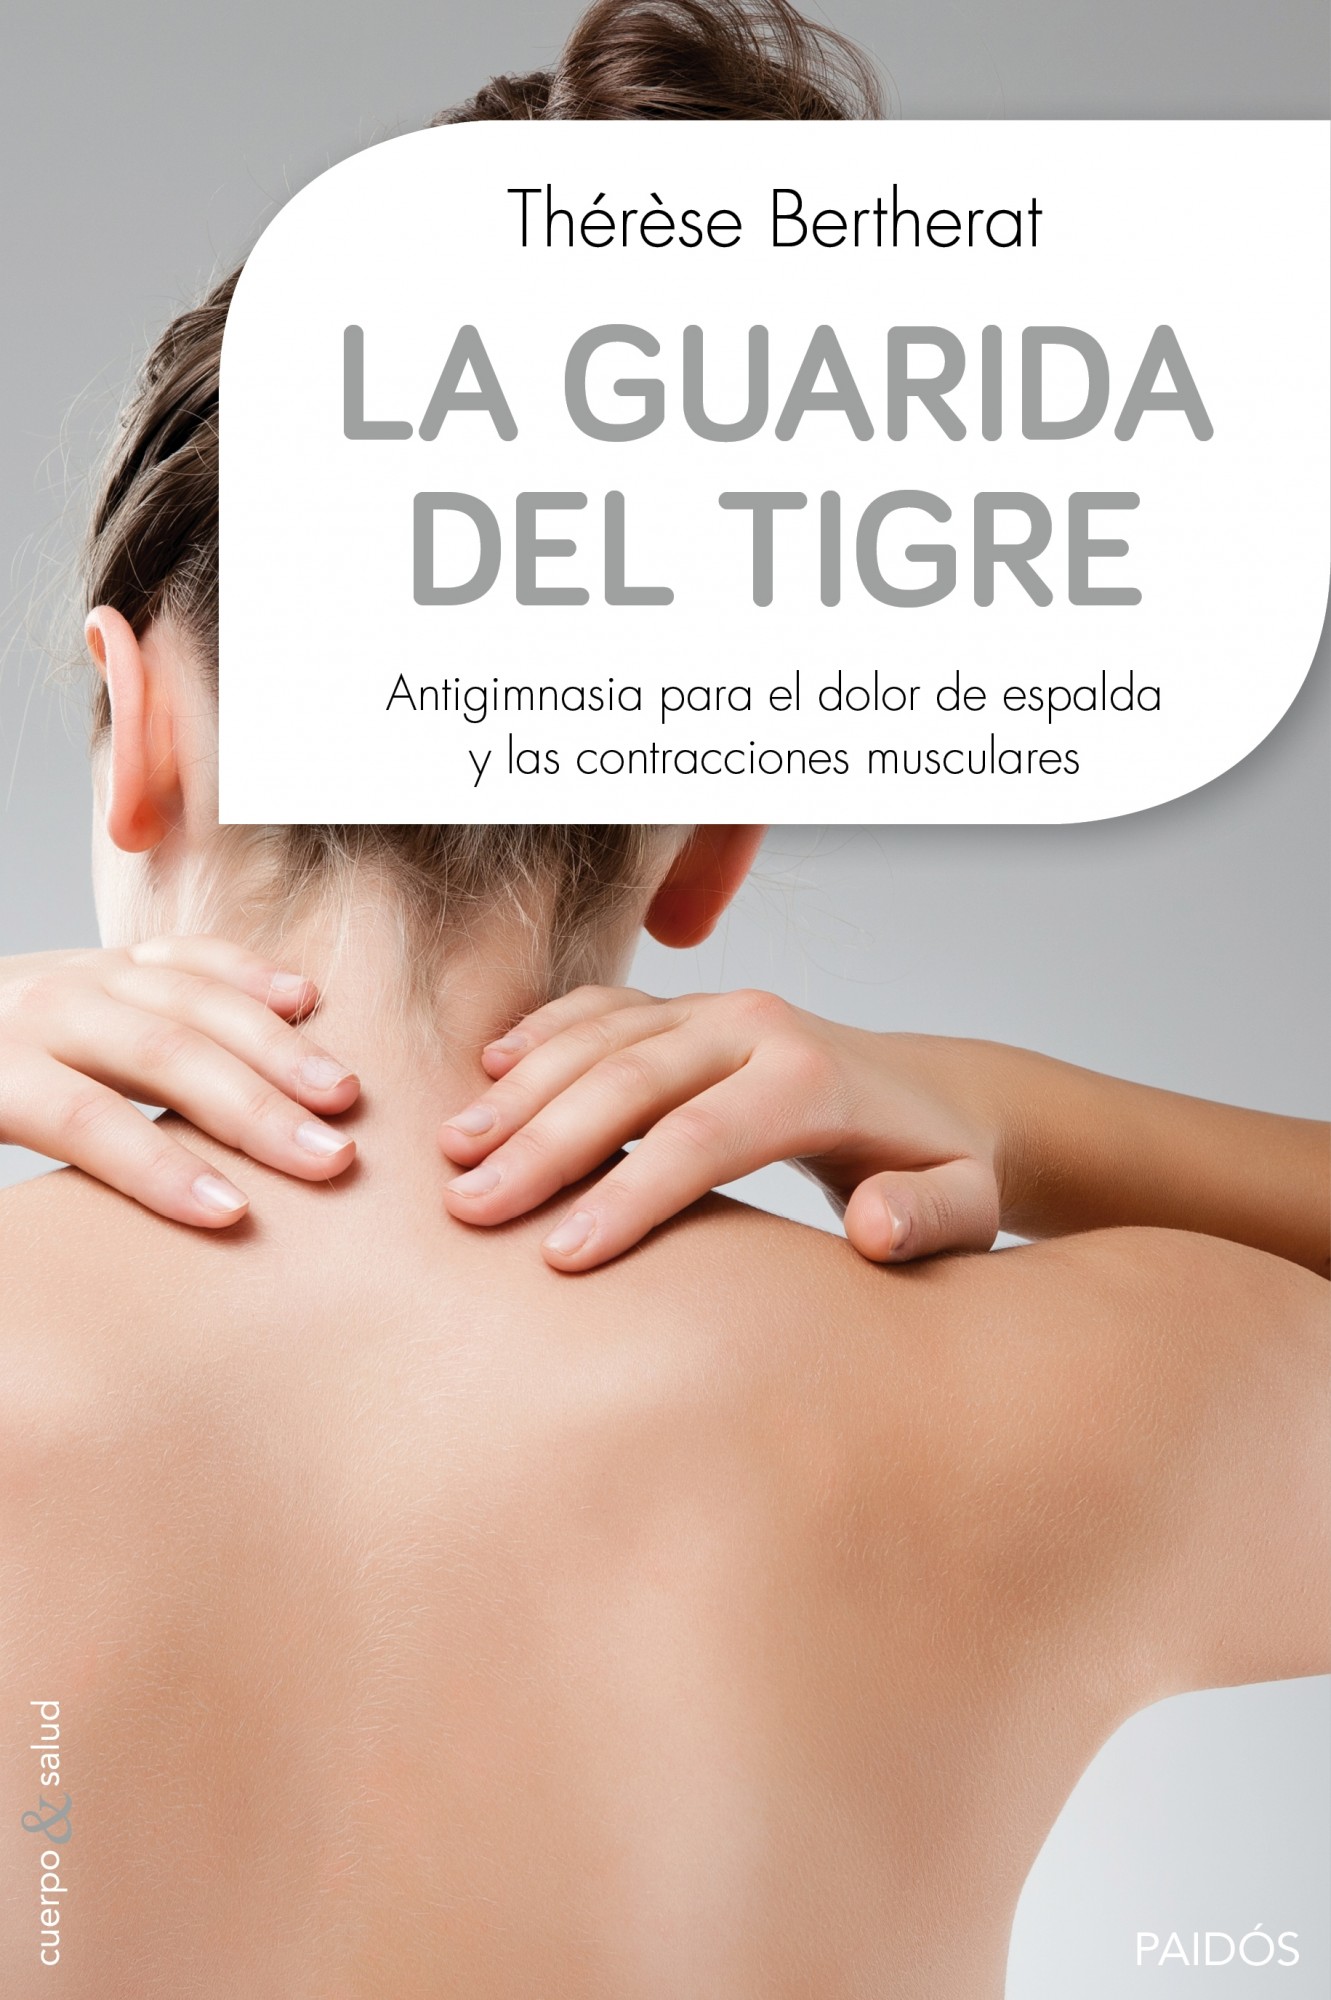 La guarida del tigre: Antigimnasia para el dolor de espalda y las contracciones musculares